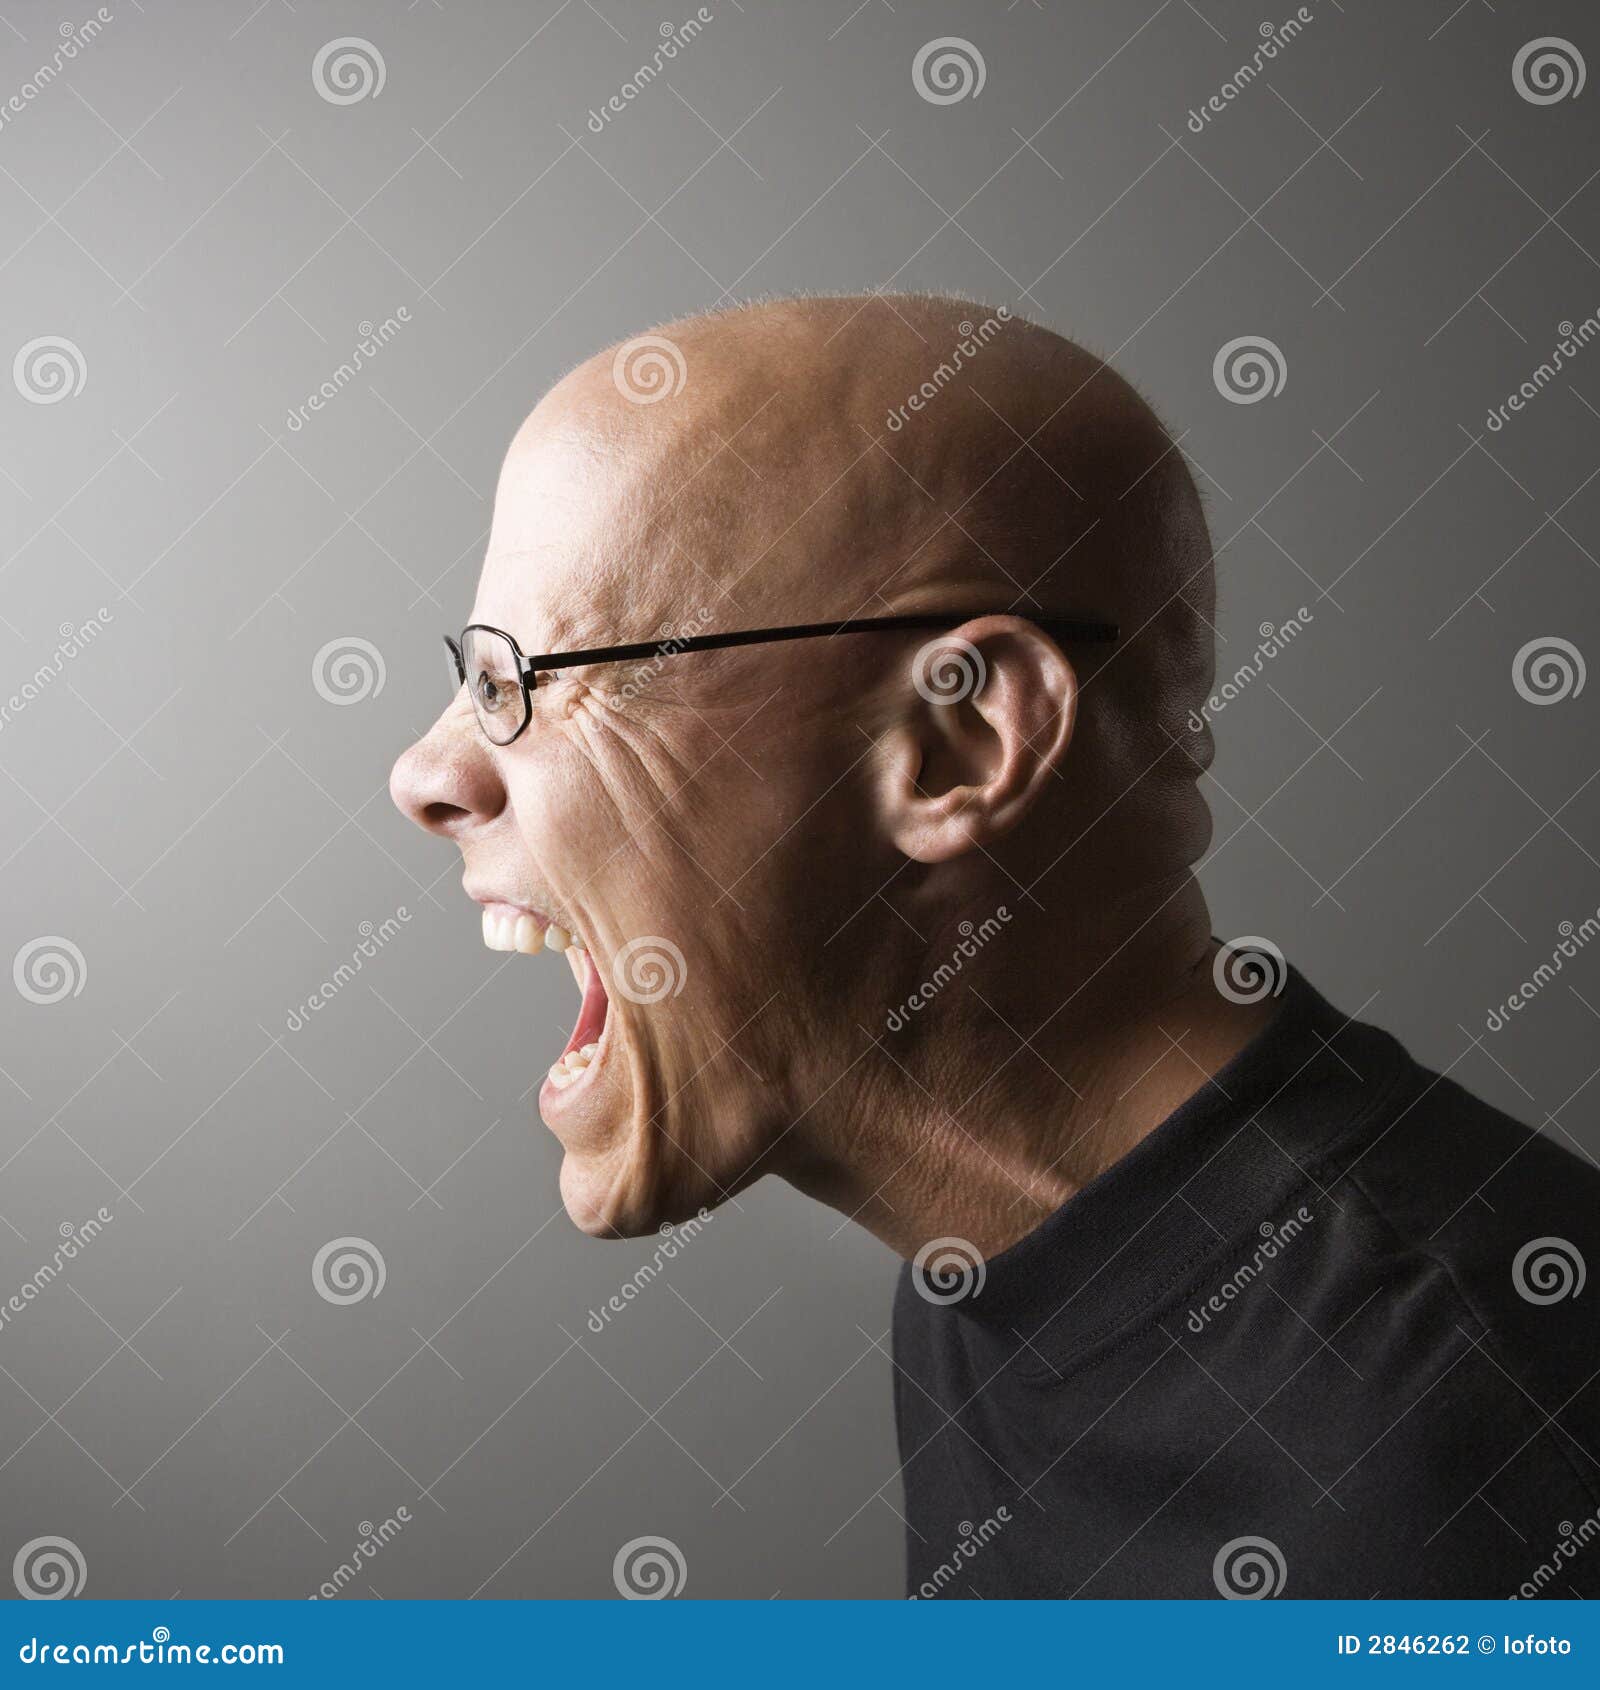 profile of man screaming.